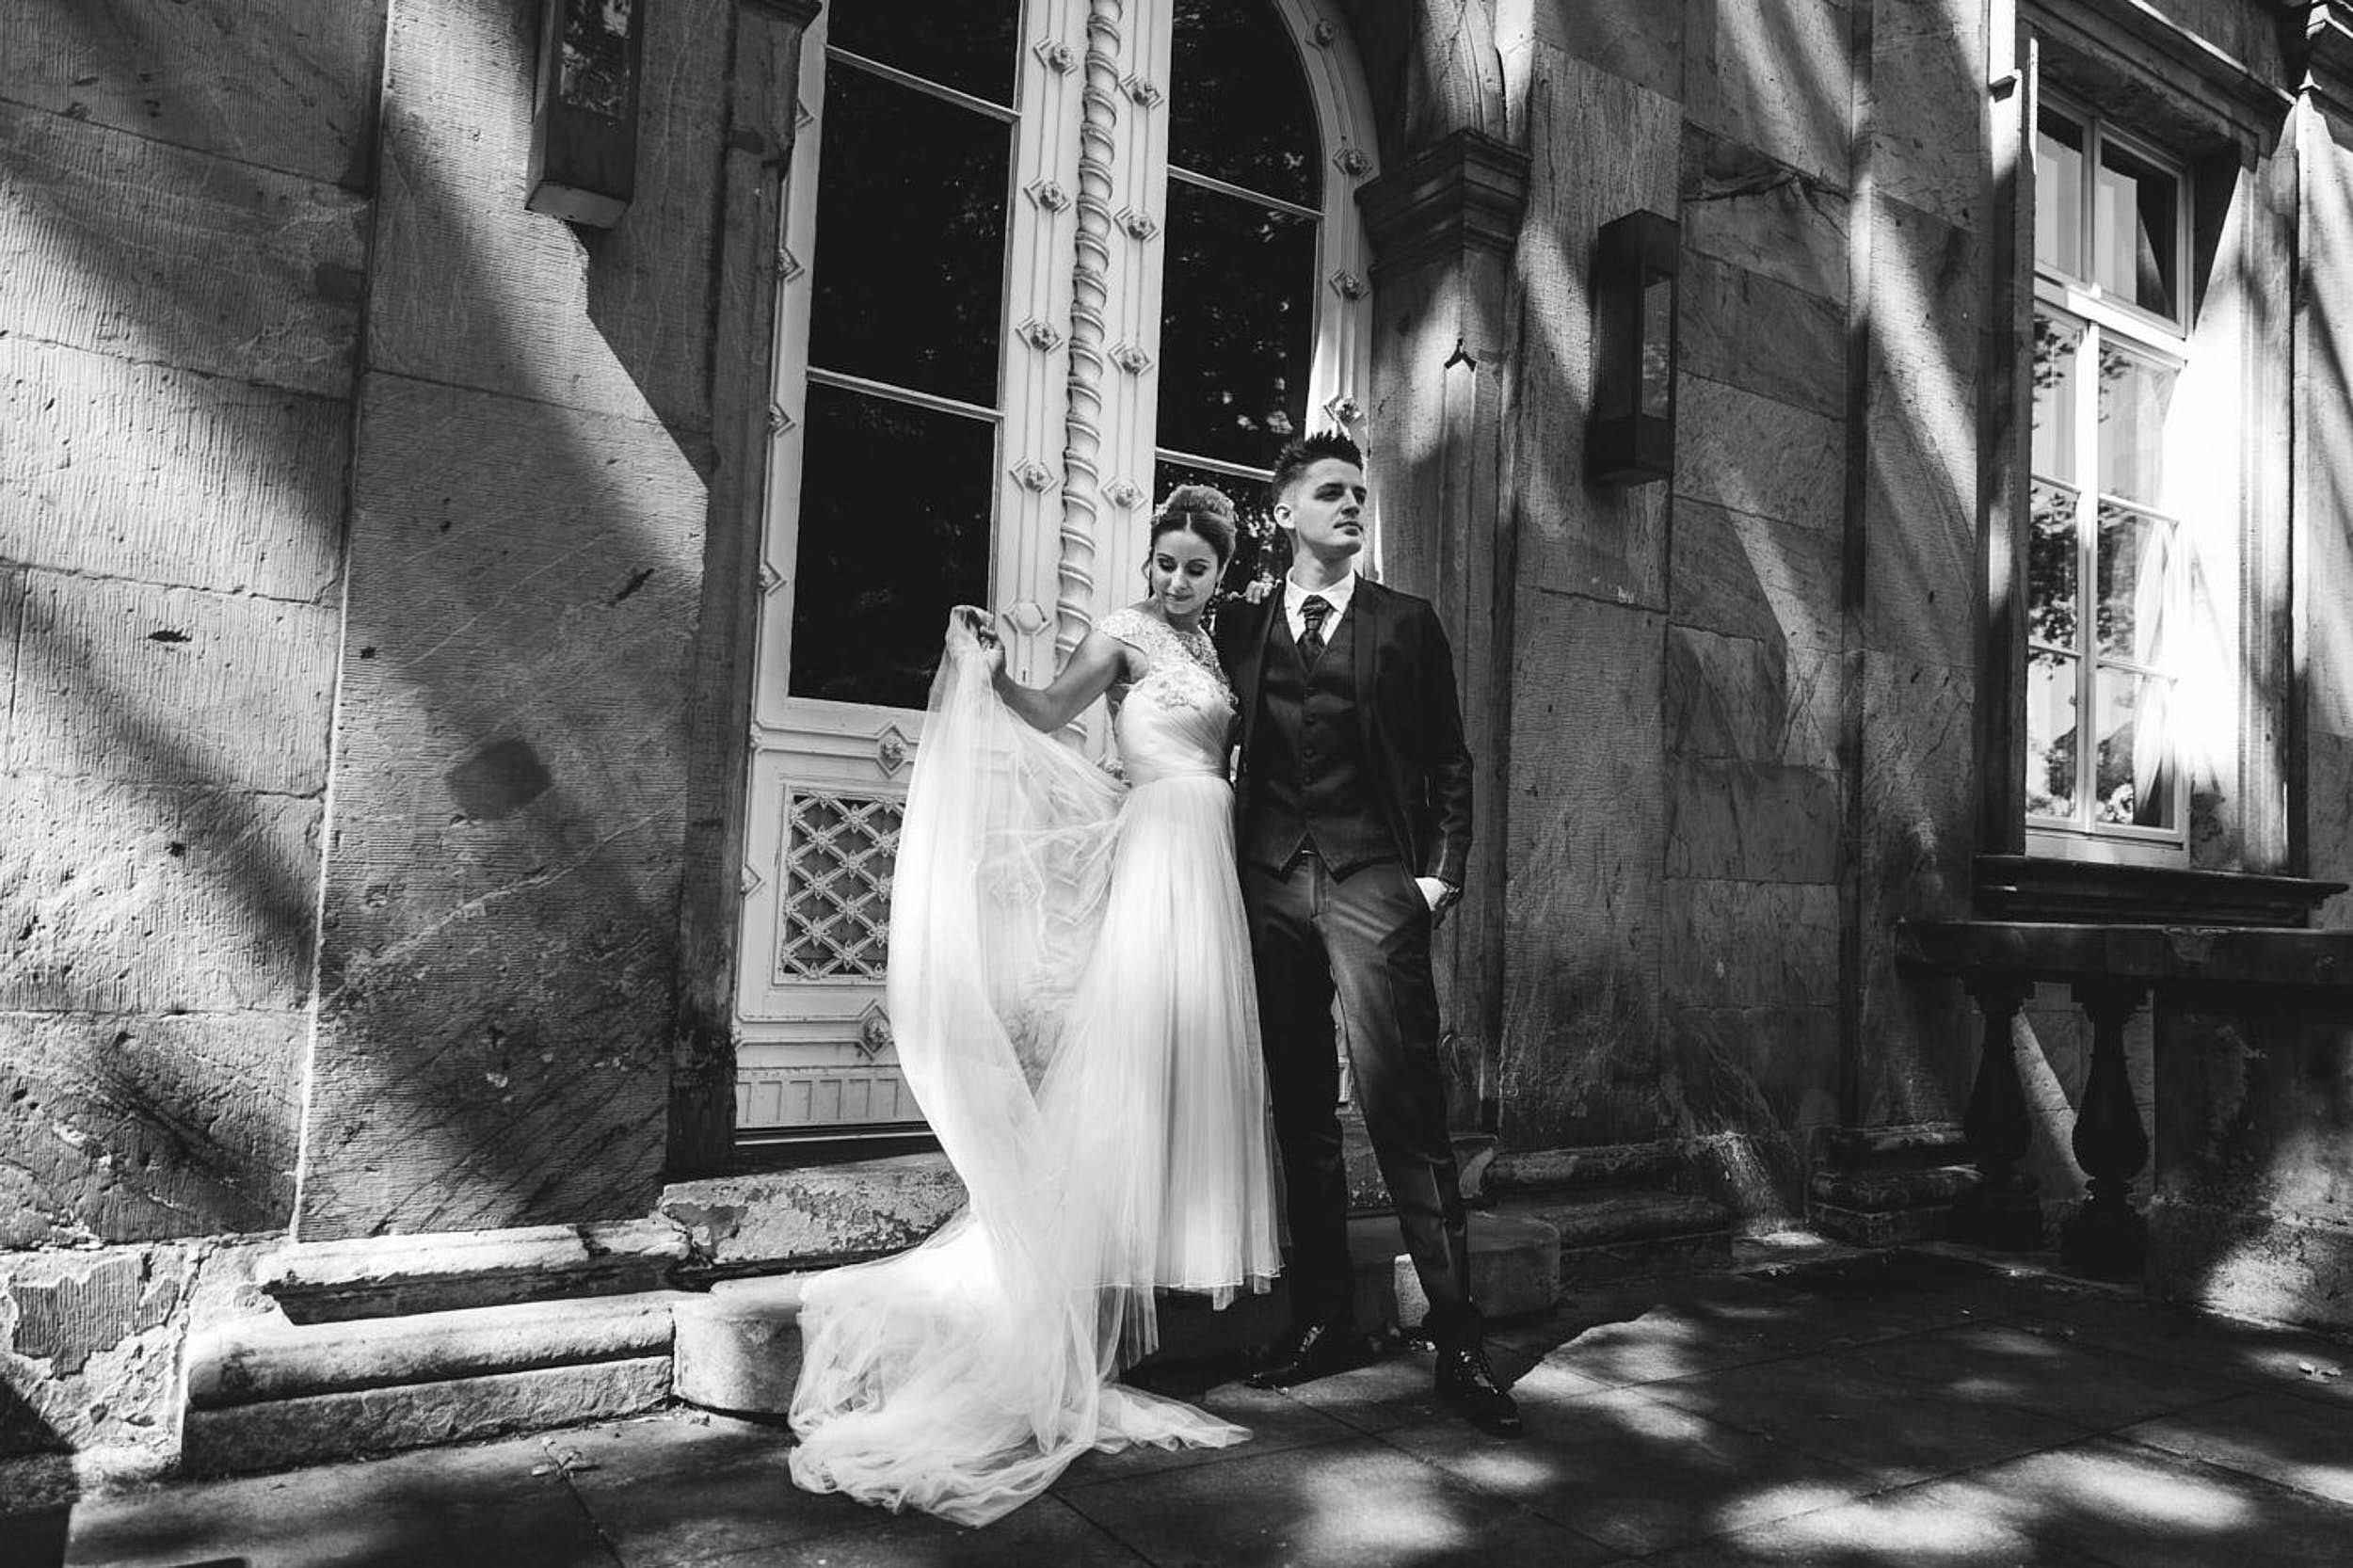 Fotoshooting am Hochzeitstag. Palaisgarten, Braut und Bräutigam stehen beieinander, die Braut spielt mit dem Schleier. Begleitung als Hochzeitsfotograf in Detmold.